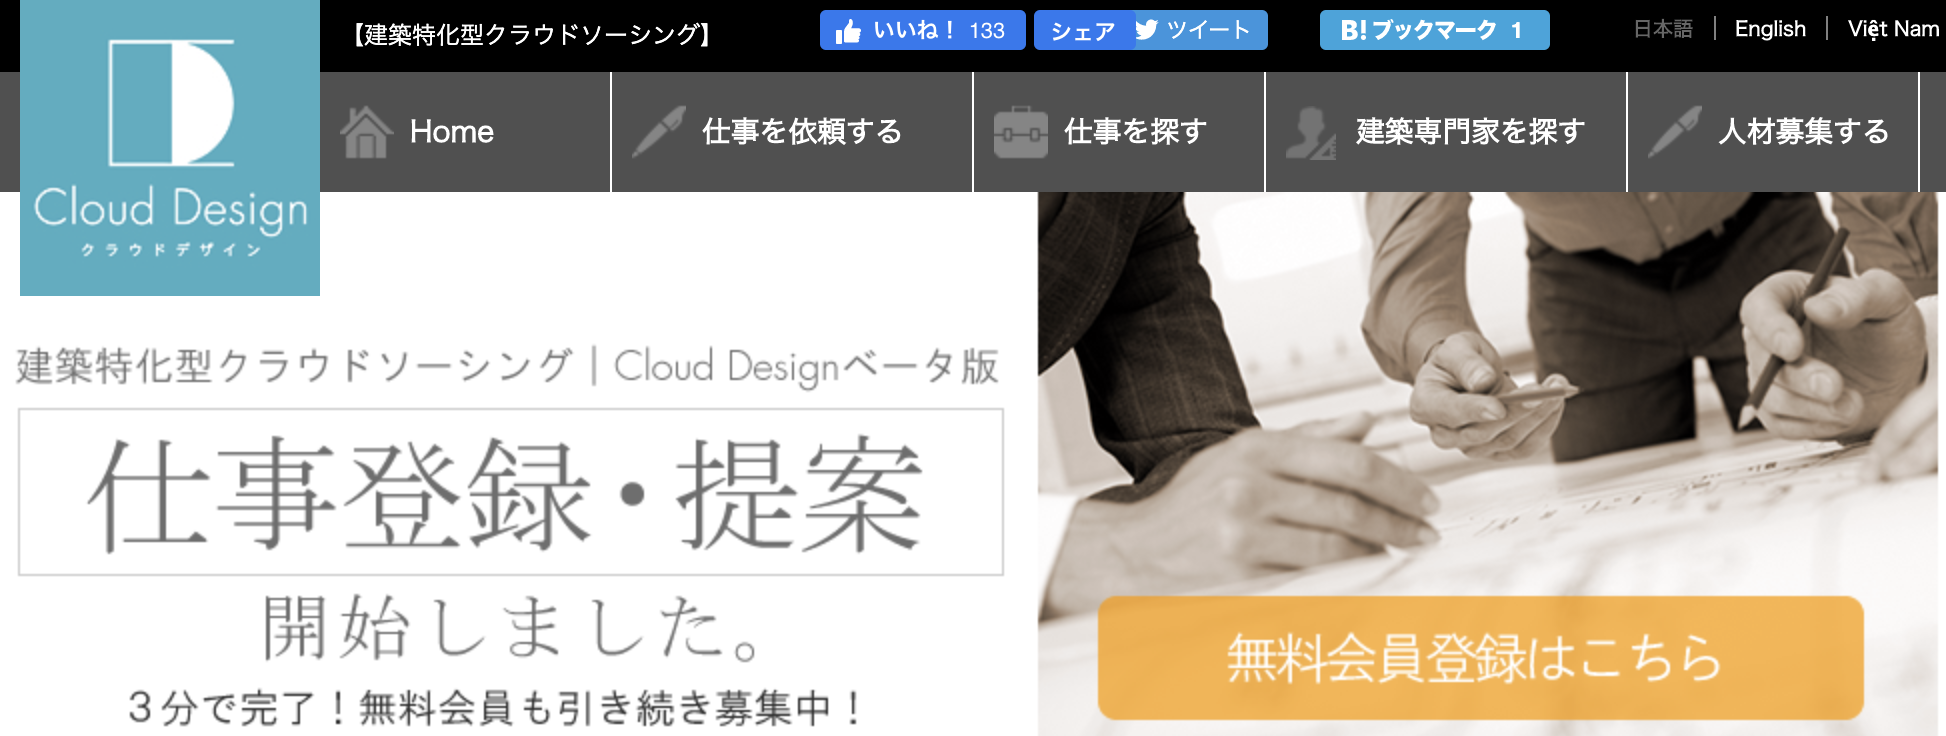 Cloud Design